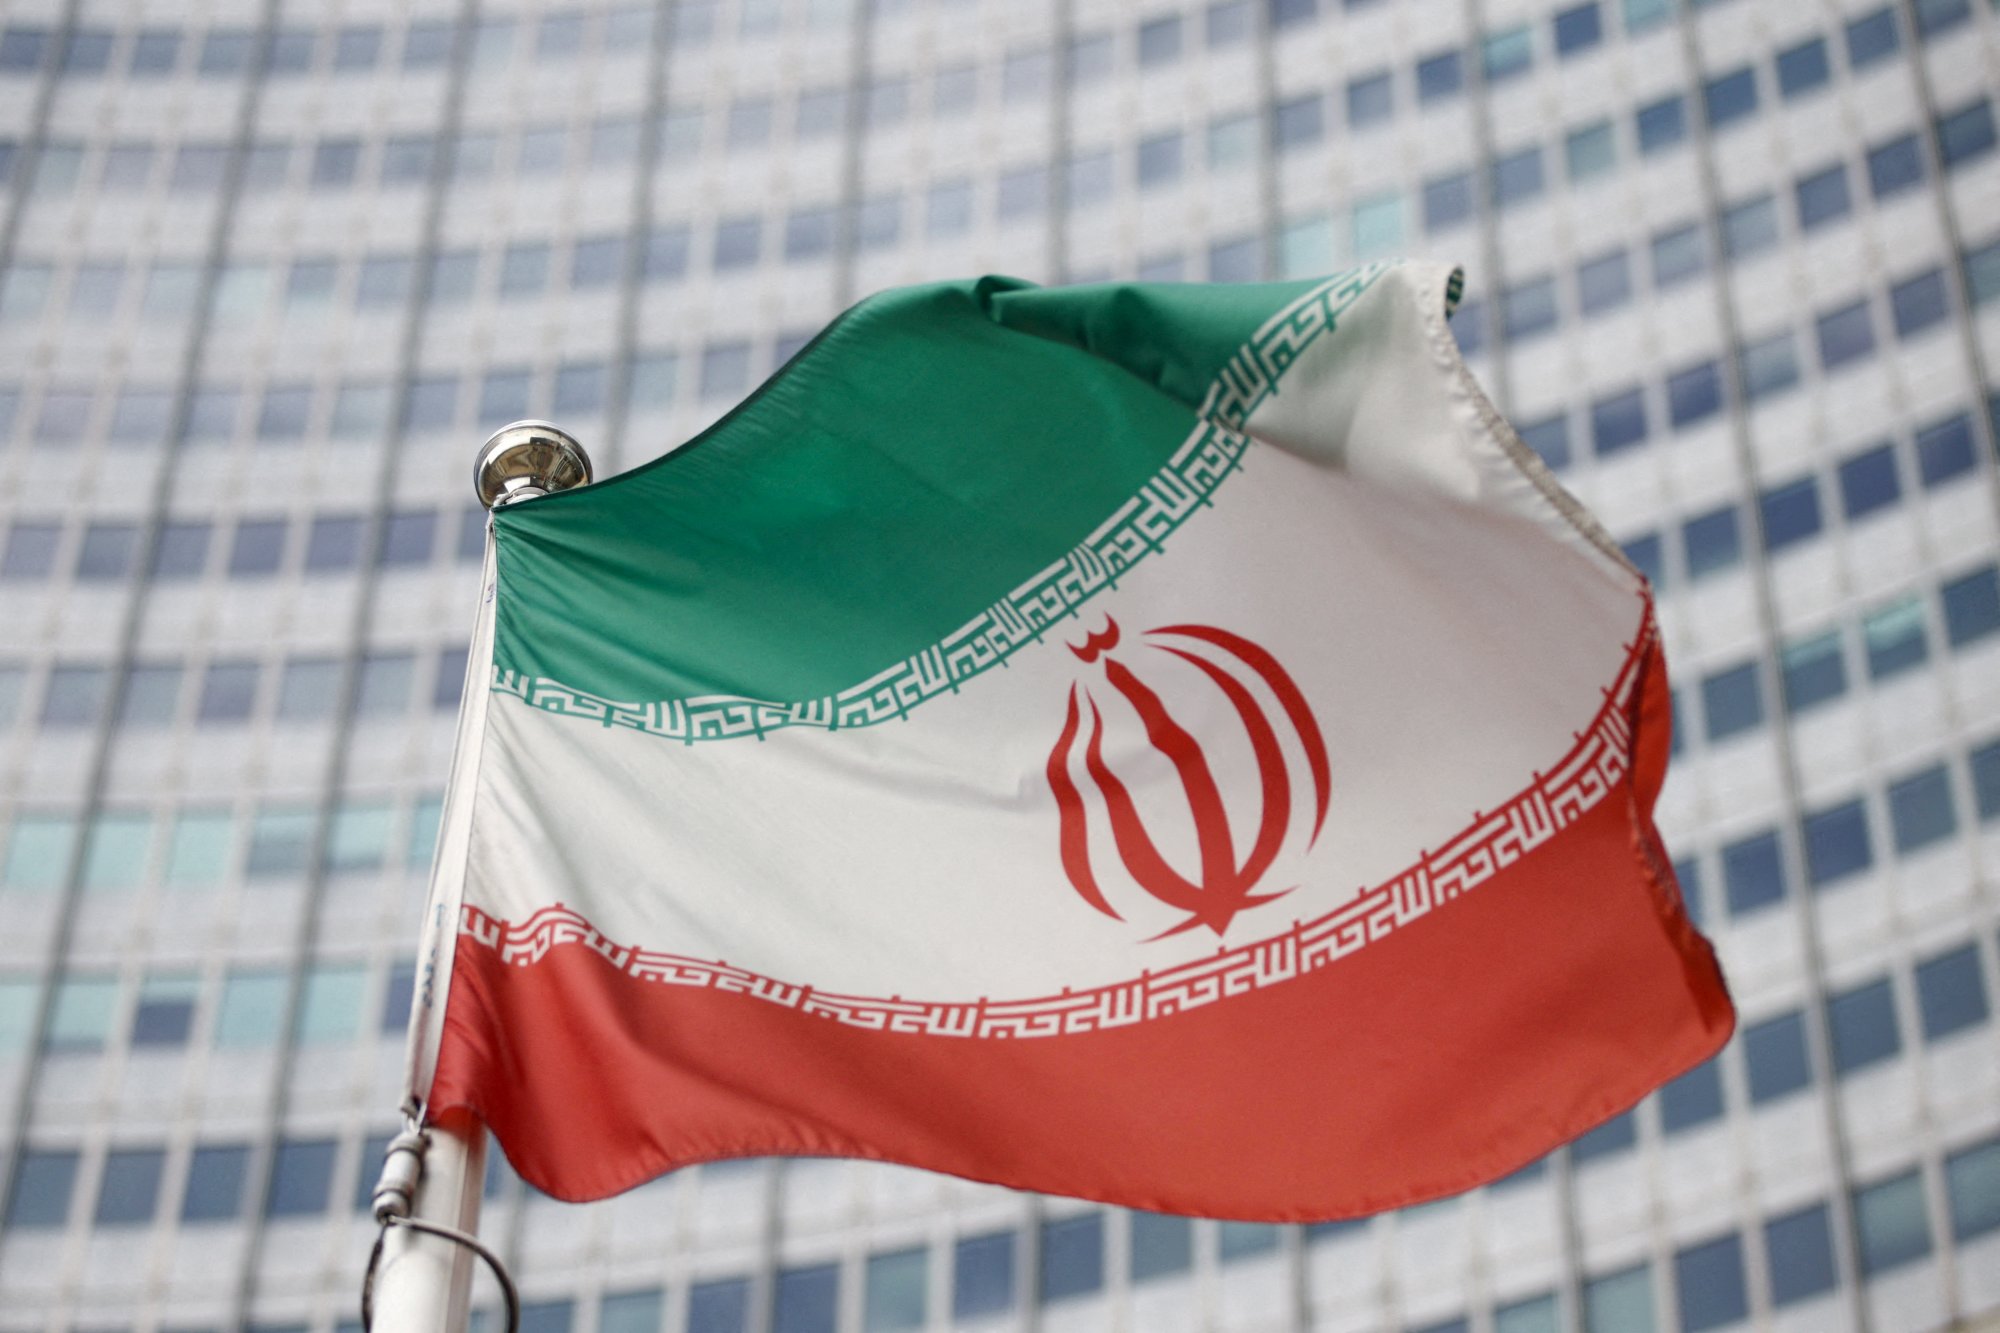 Ιράν: «Δεν υπήρξε επίθεση από το εξωτερικό» - Τα drones χρησιμοποιήθηκαν από άτομα που διείσδυσαν στη χώρα